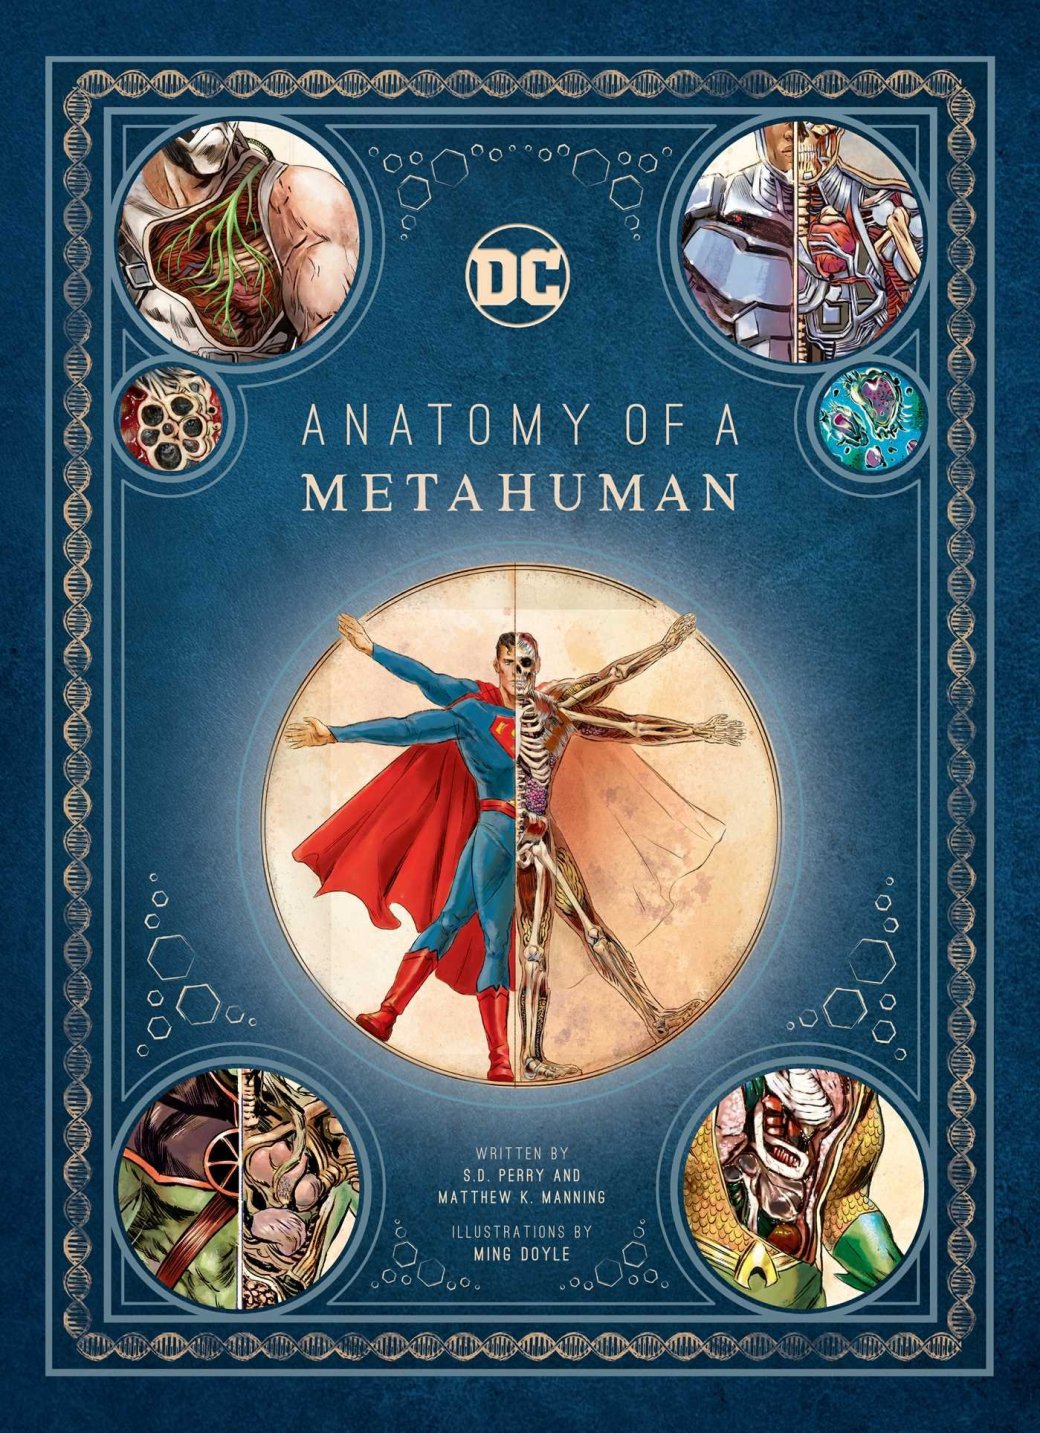 Галерея Анатомия супергероя: как устроен Супермен и другие металюди в комиксах DC? - 1 фото